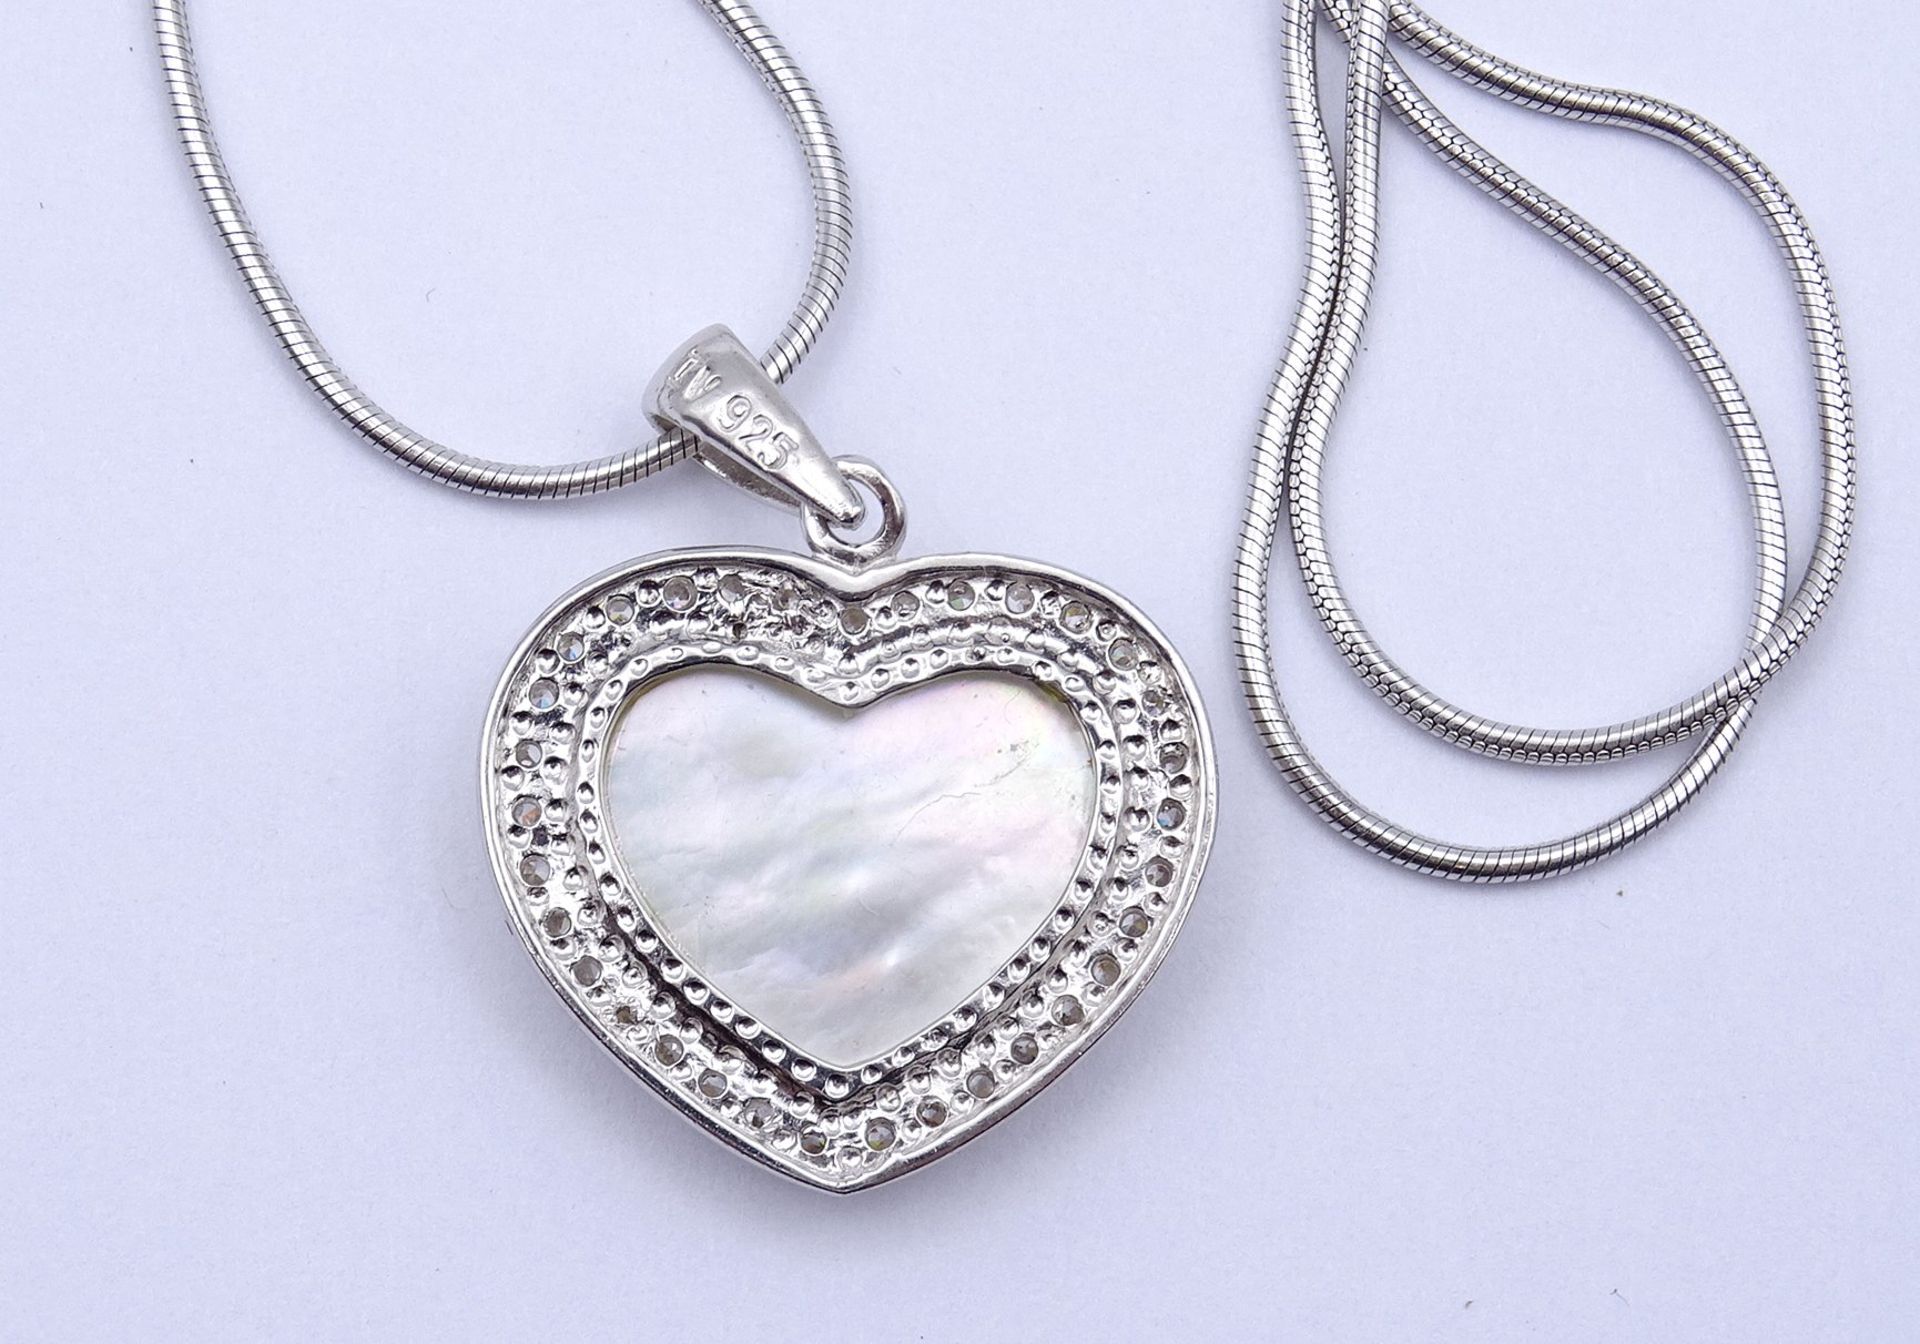 Halskette mit Herzanhänger, Silber 0.925, Herz mit Perlmutt, Kette L. 50cm, 8,8g. - Bild 3 aus 3